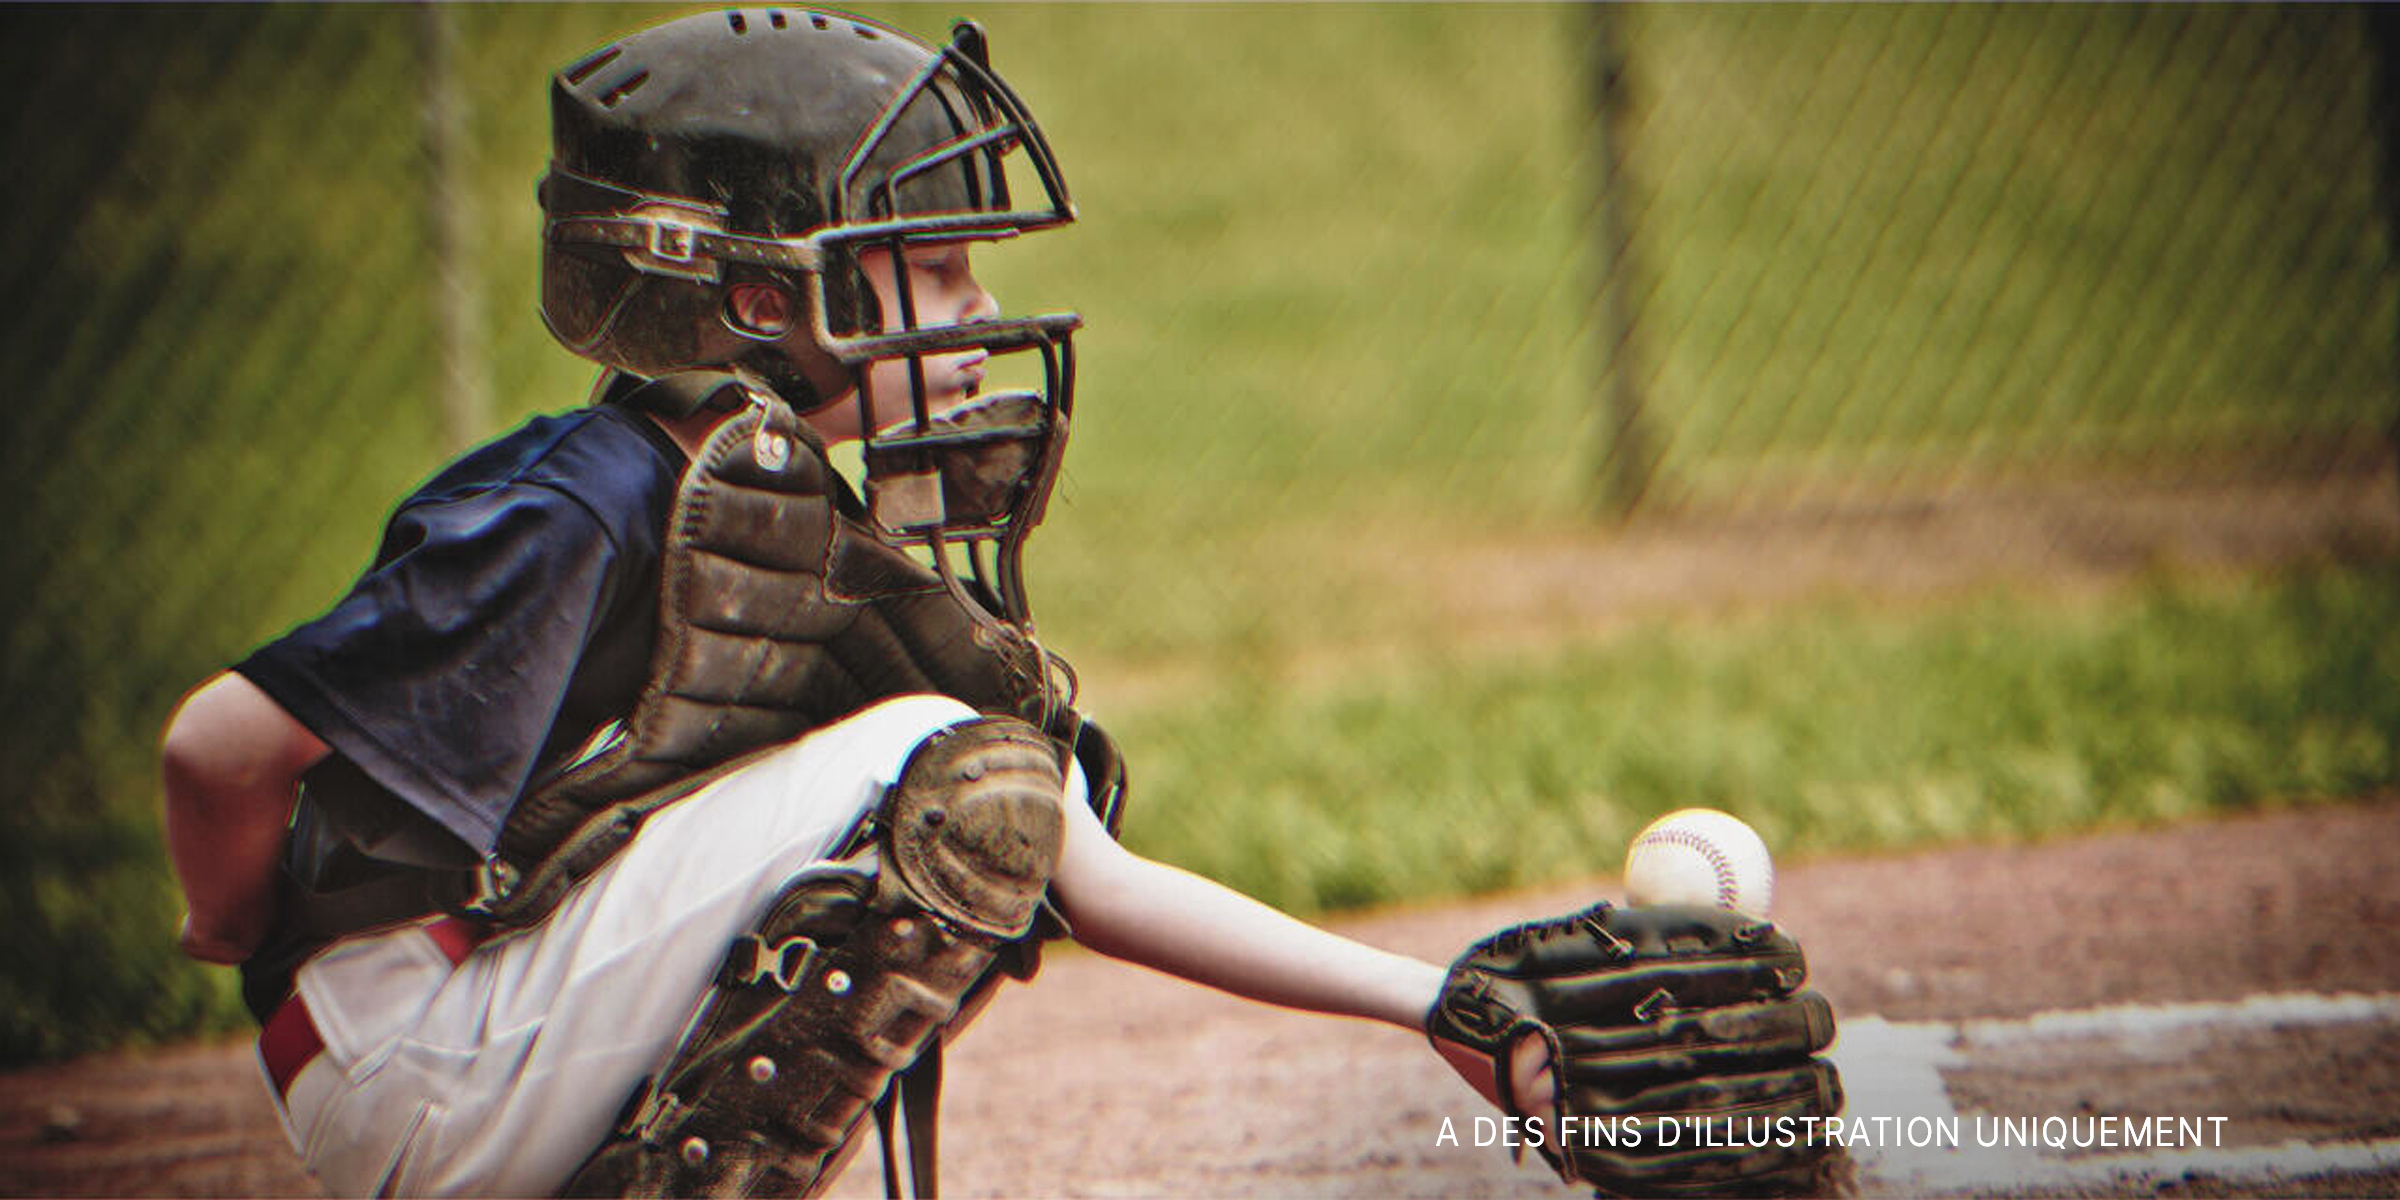 Garçon jouant au baseball. | Source : Shutterstock